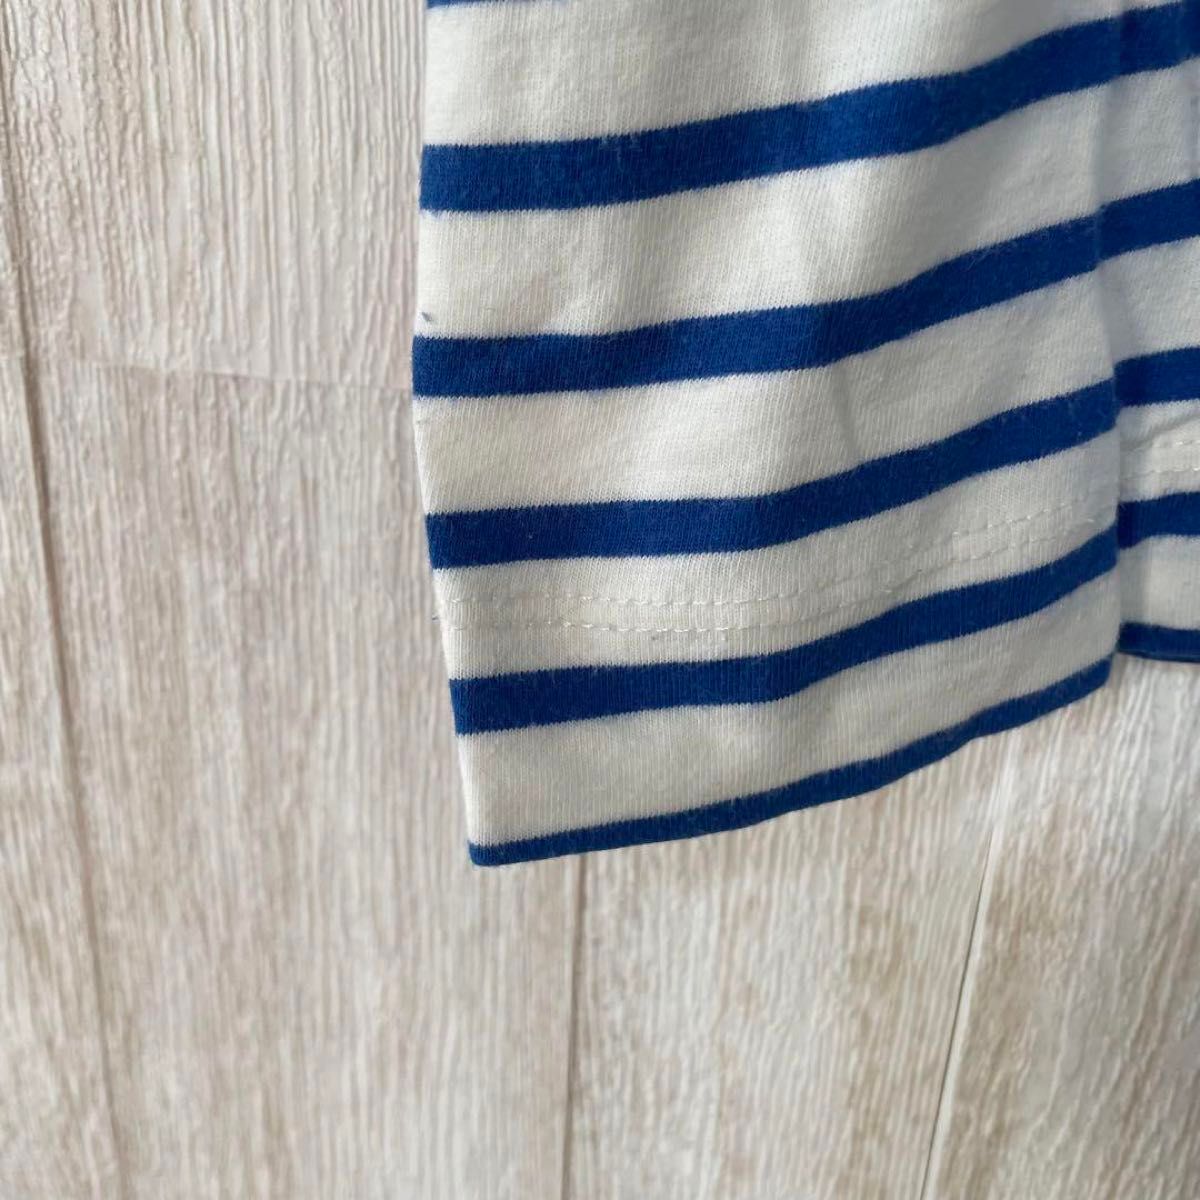 【ニコアンド】ドロップショルダー ボーダー カットソー/クルーネック/体型カバー 半袖 Tシャツ ホワイト ブルー オーバーサイズ